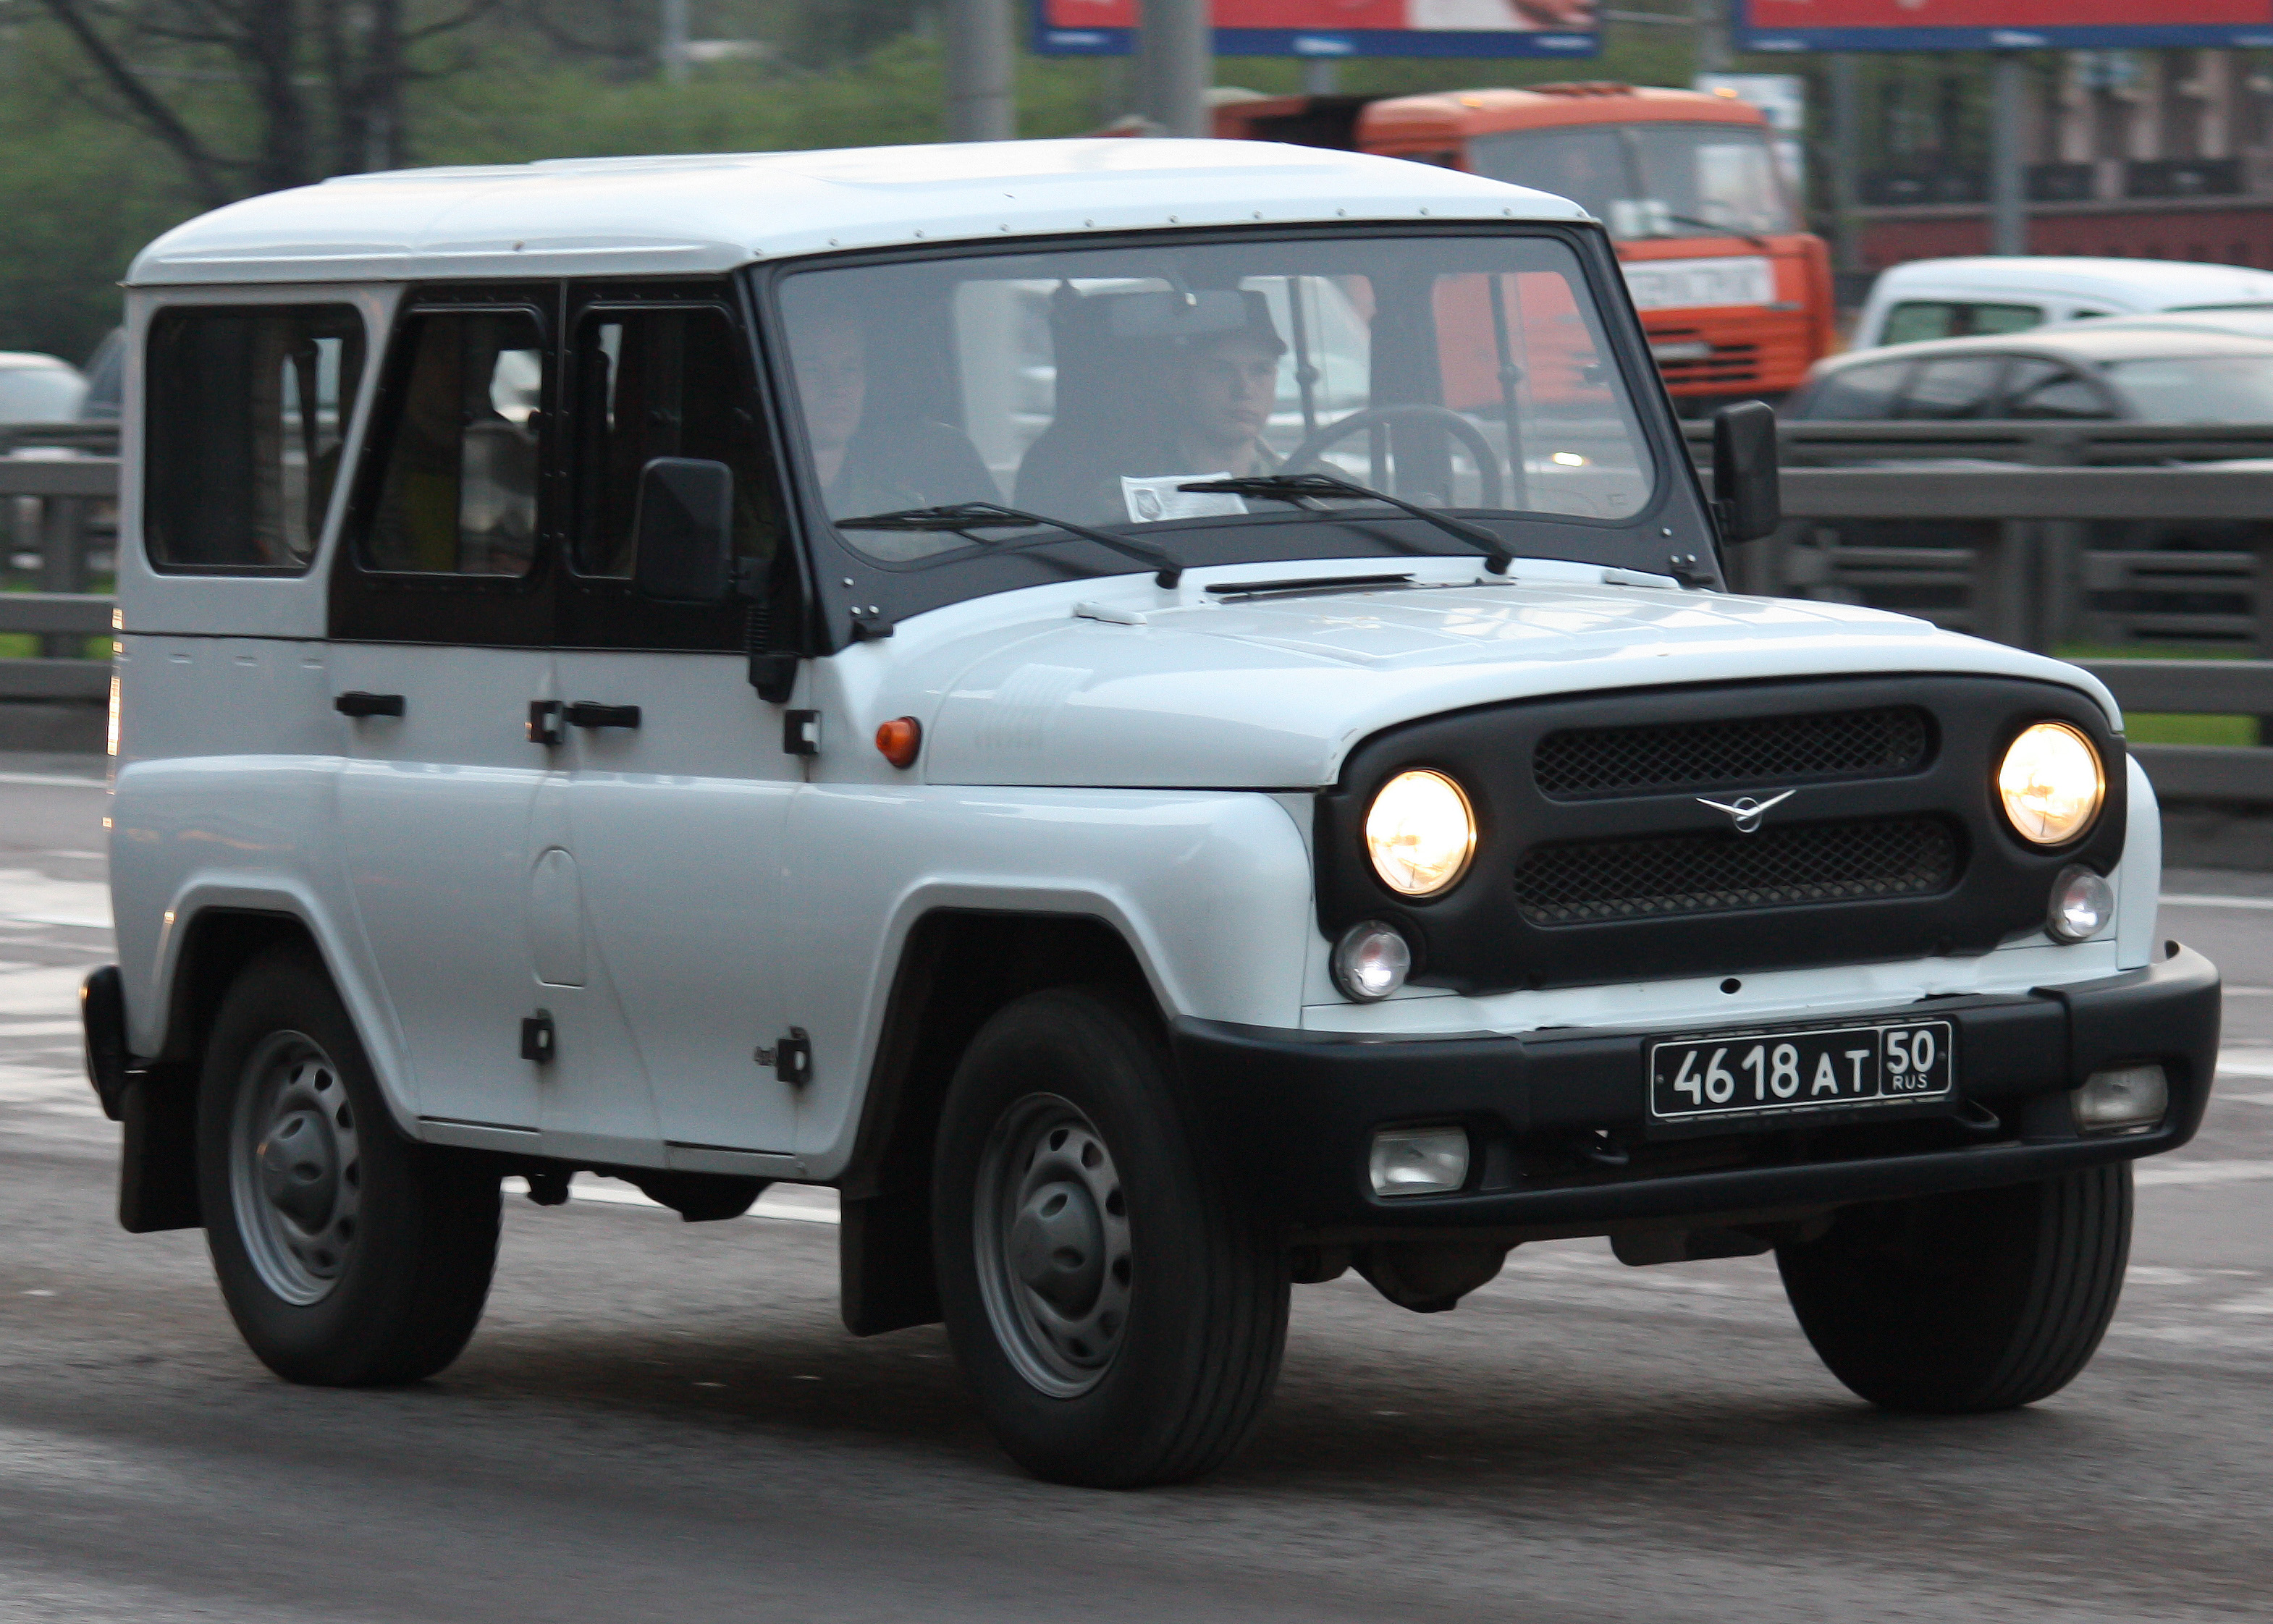 UAZ Pickup 4k model